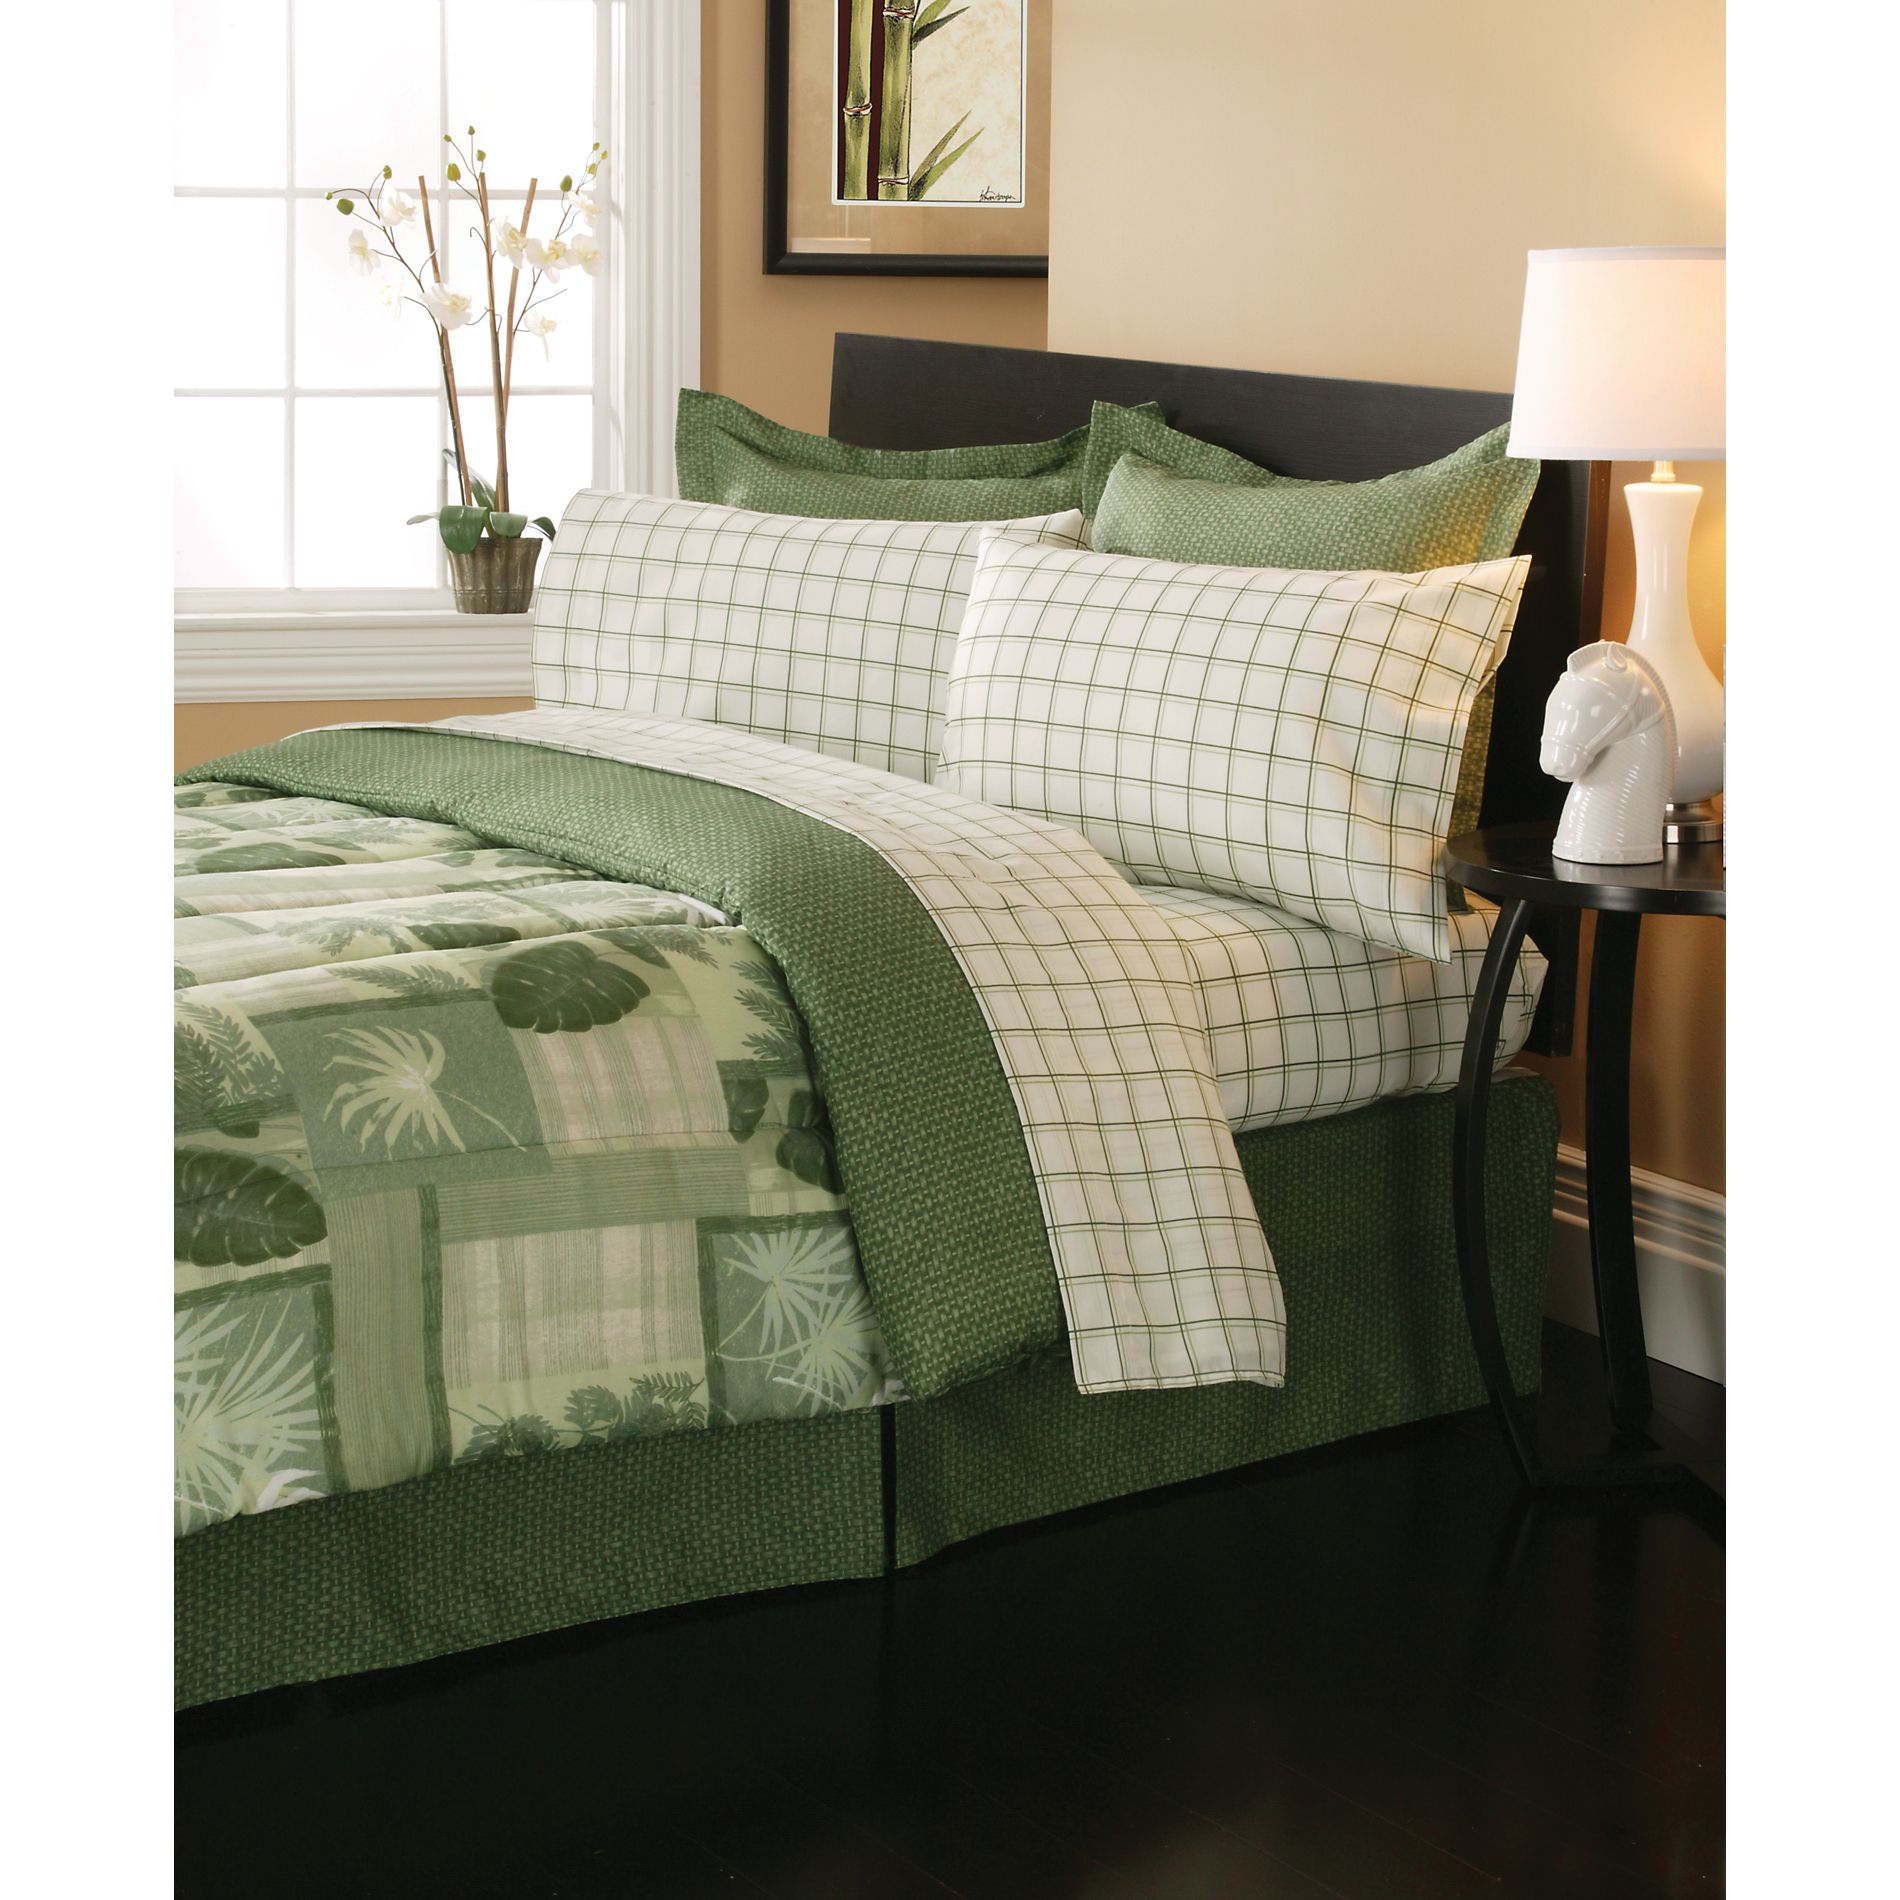 8-Piece Complete Bed Set - Belize Olive Green